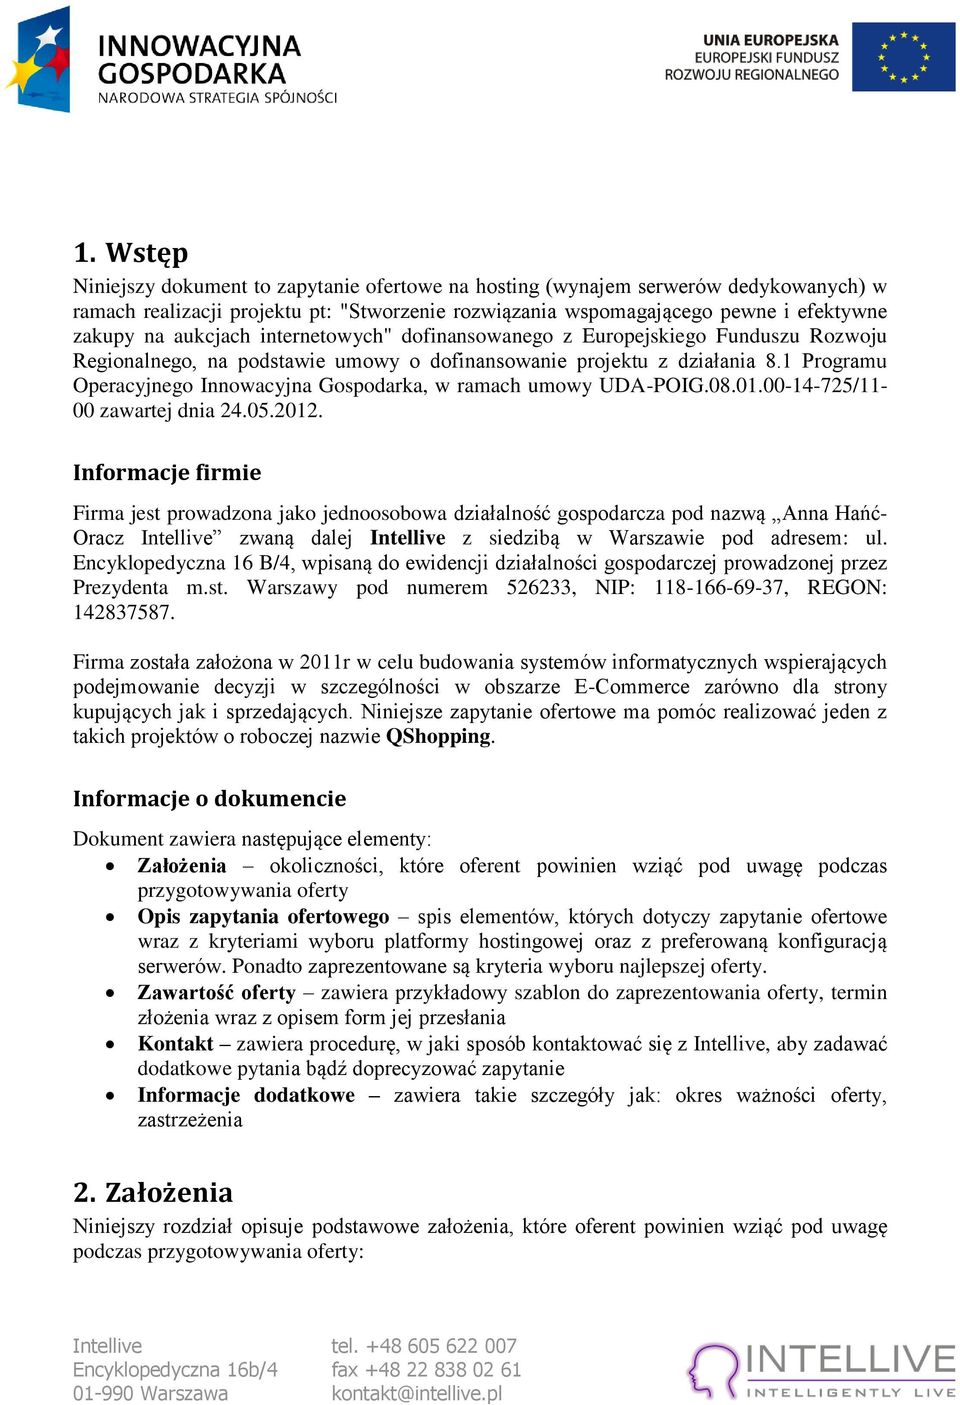 1 Programu Operacyjnego Innowacyjna Gospodarka, w ramach umowy UDA-POIG.08.01.00-14-725/11-00 zawartej dnia 24.05.2012.